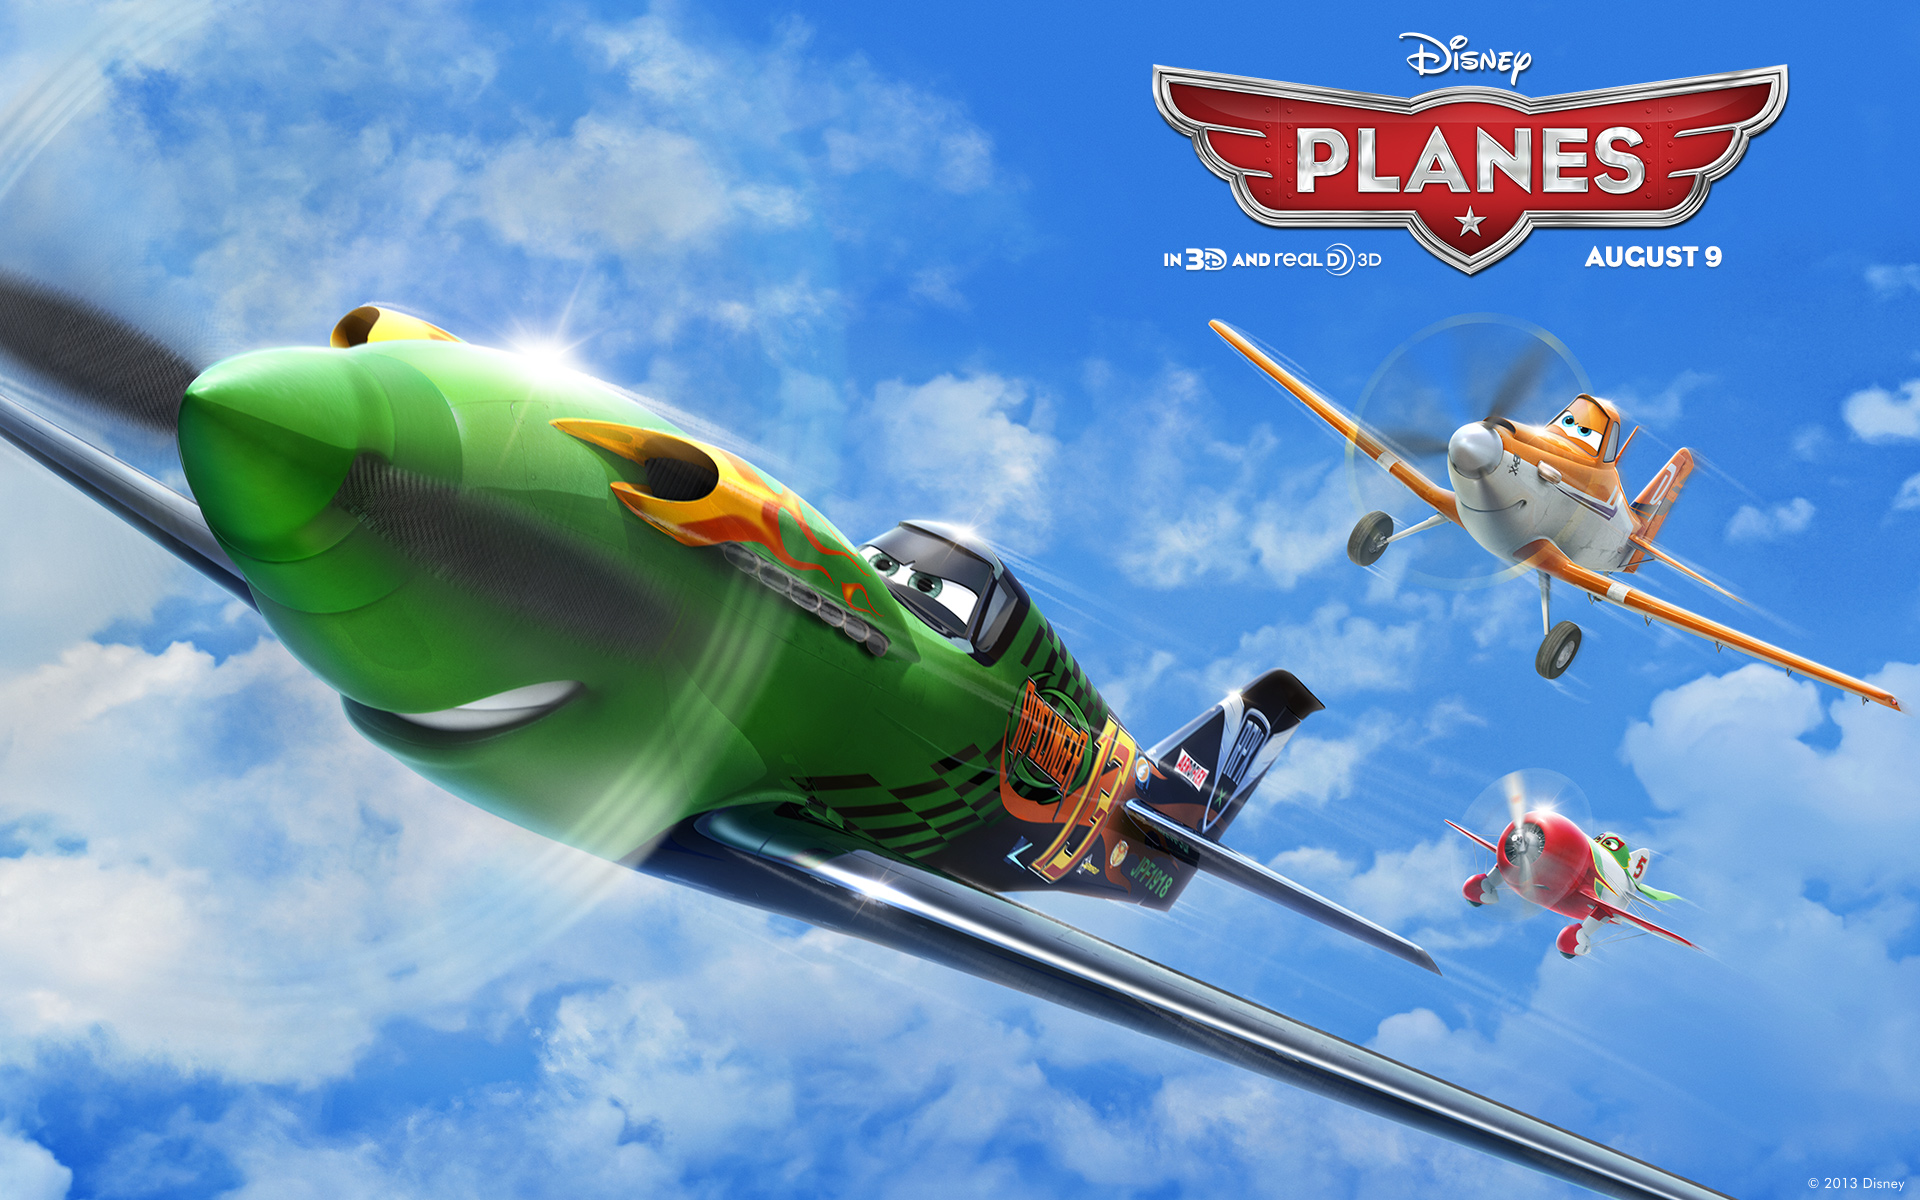 Planes Widescreen Wallpaper - Disney Planes - HD Wallpaper 